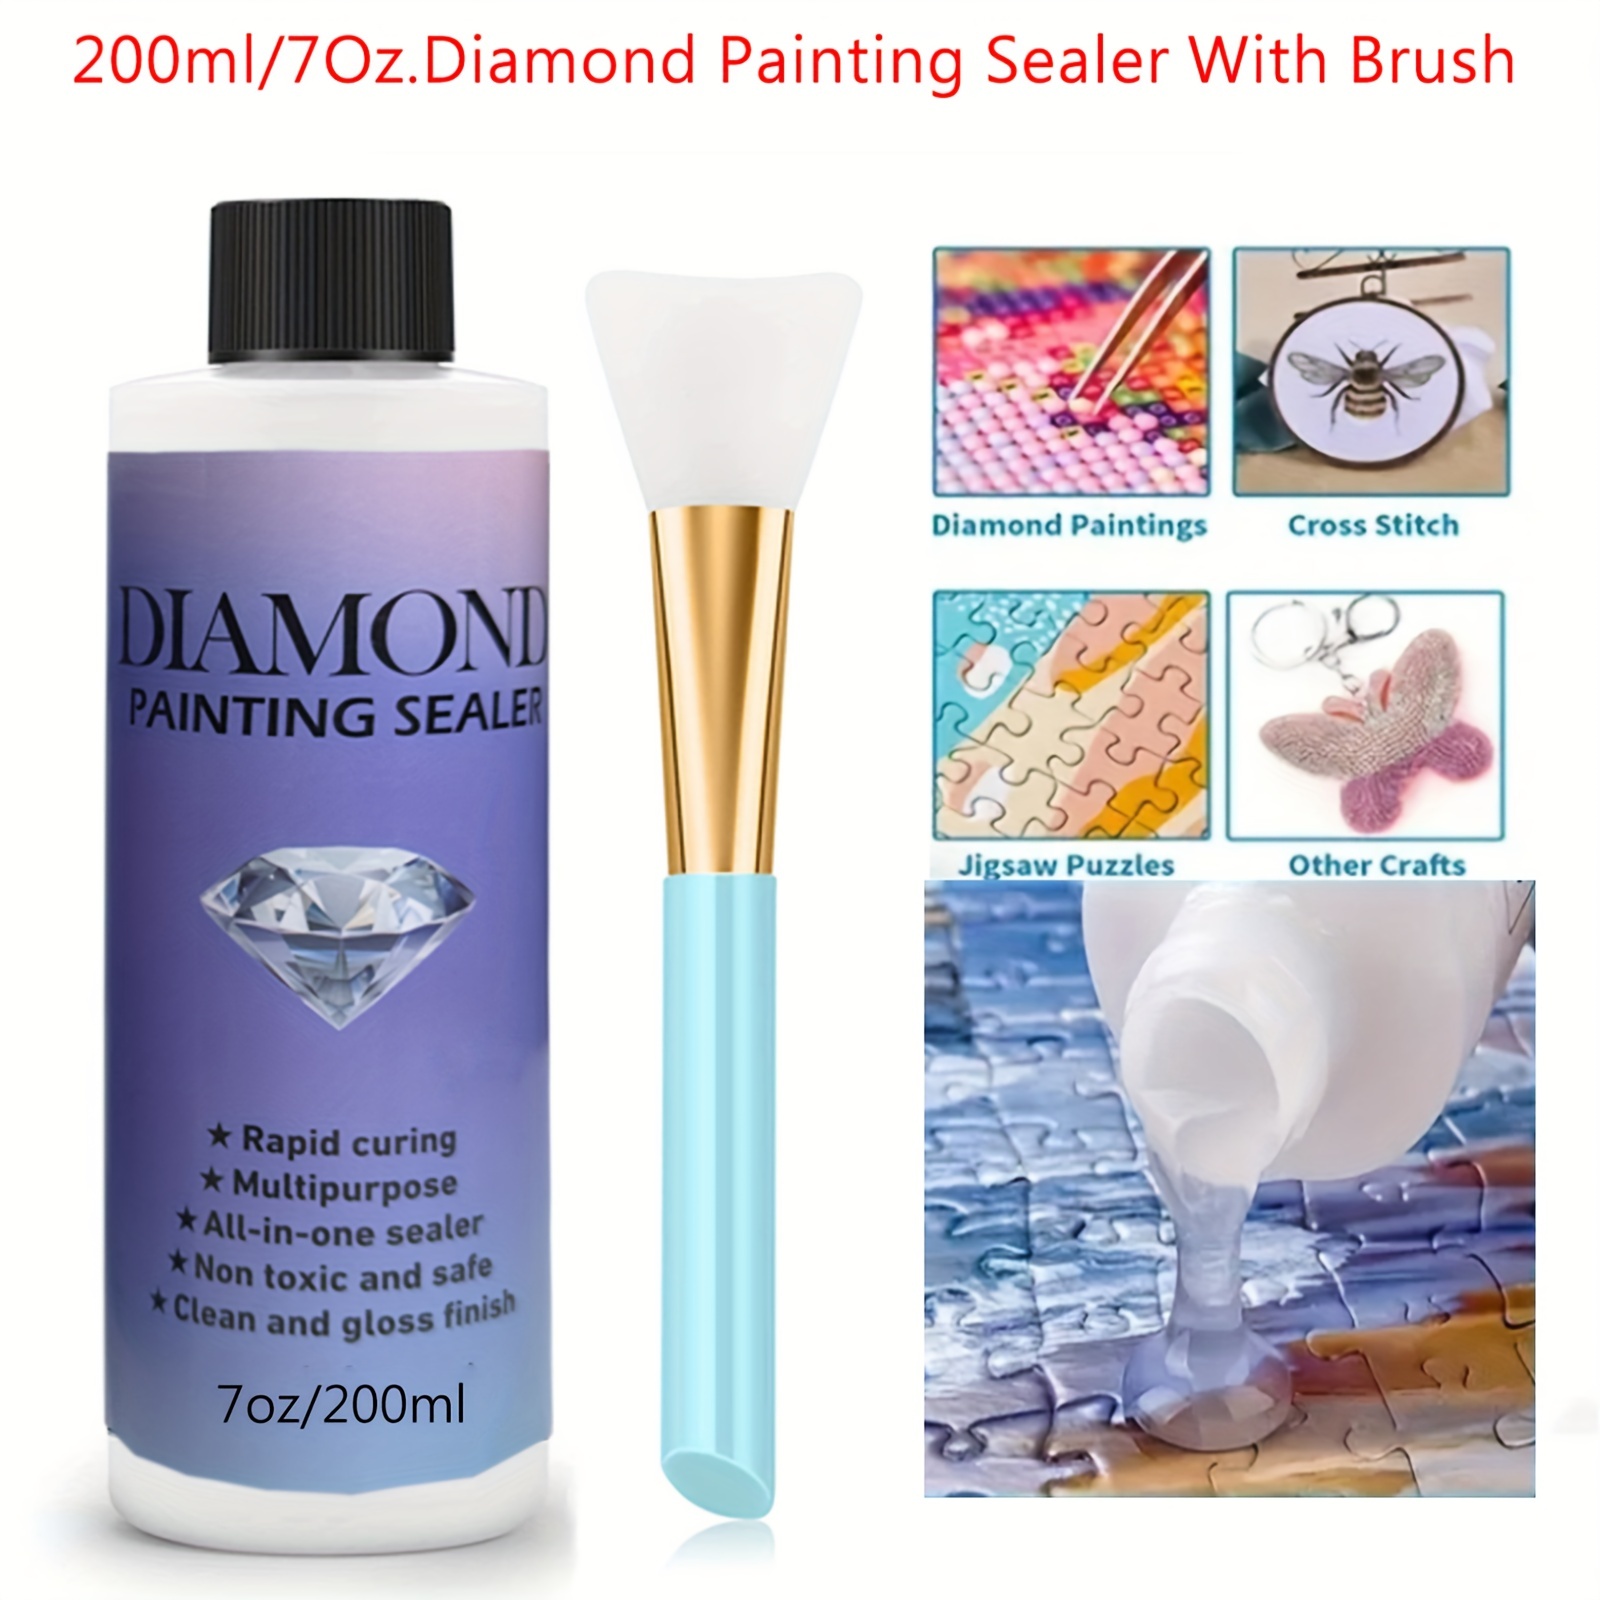 NAIMOER 2Pack Diamond Painting Sealer 240ML, Diamond Art Sealer with Sponge  H